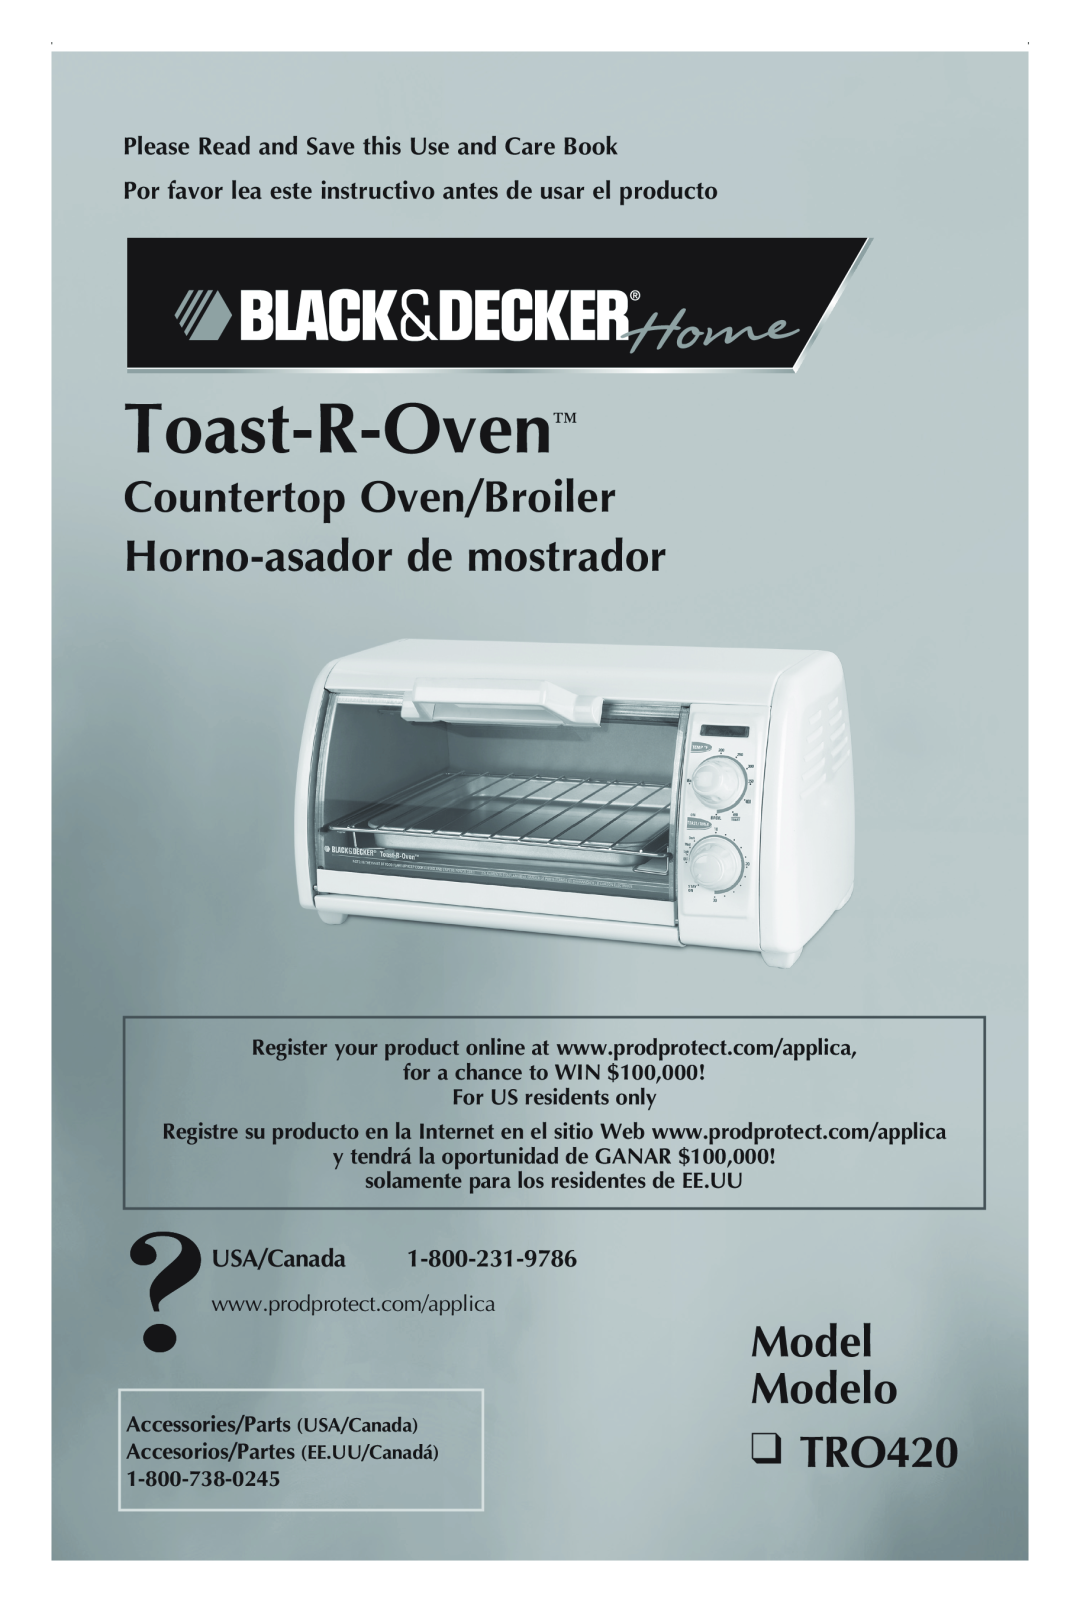 Black & Decker manual Countertop Oven/Broiler Horno-asadorde mostrador, Model Modelo TRO420, Toast-R-Oven, USA/Canada 